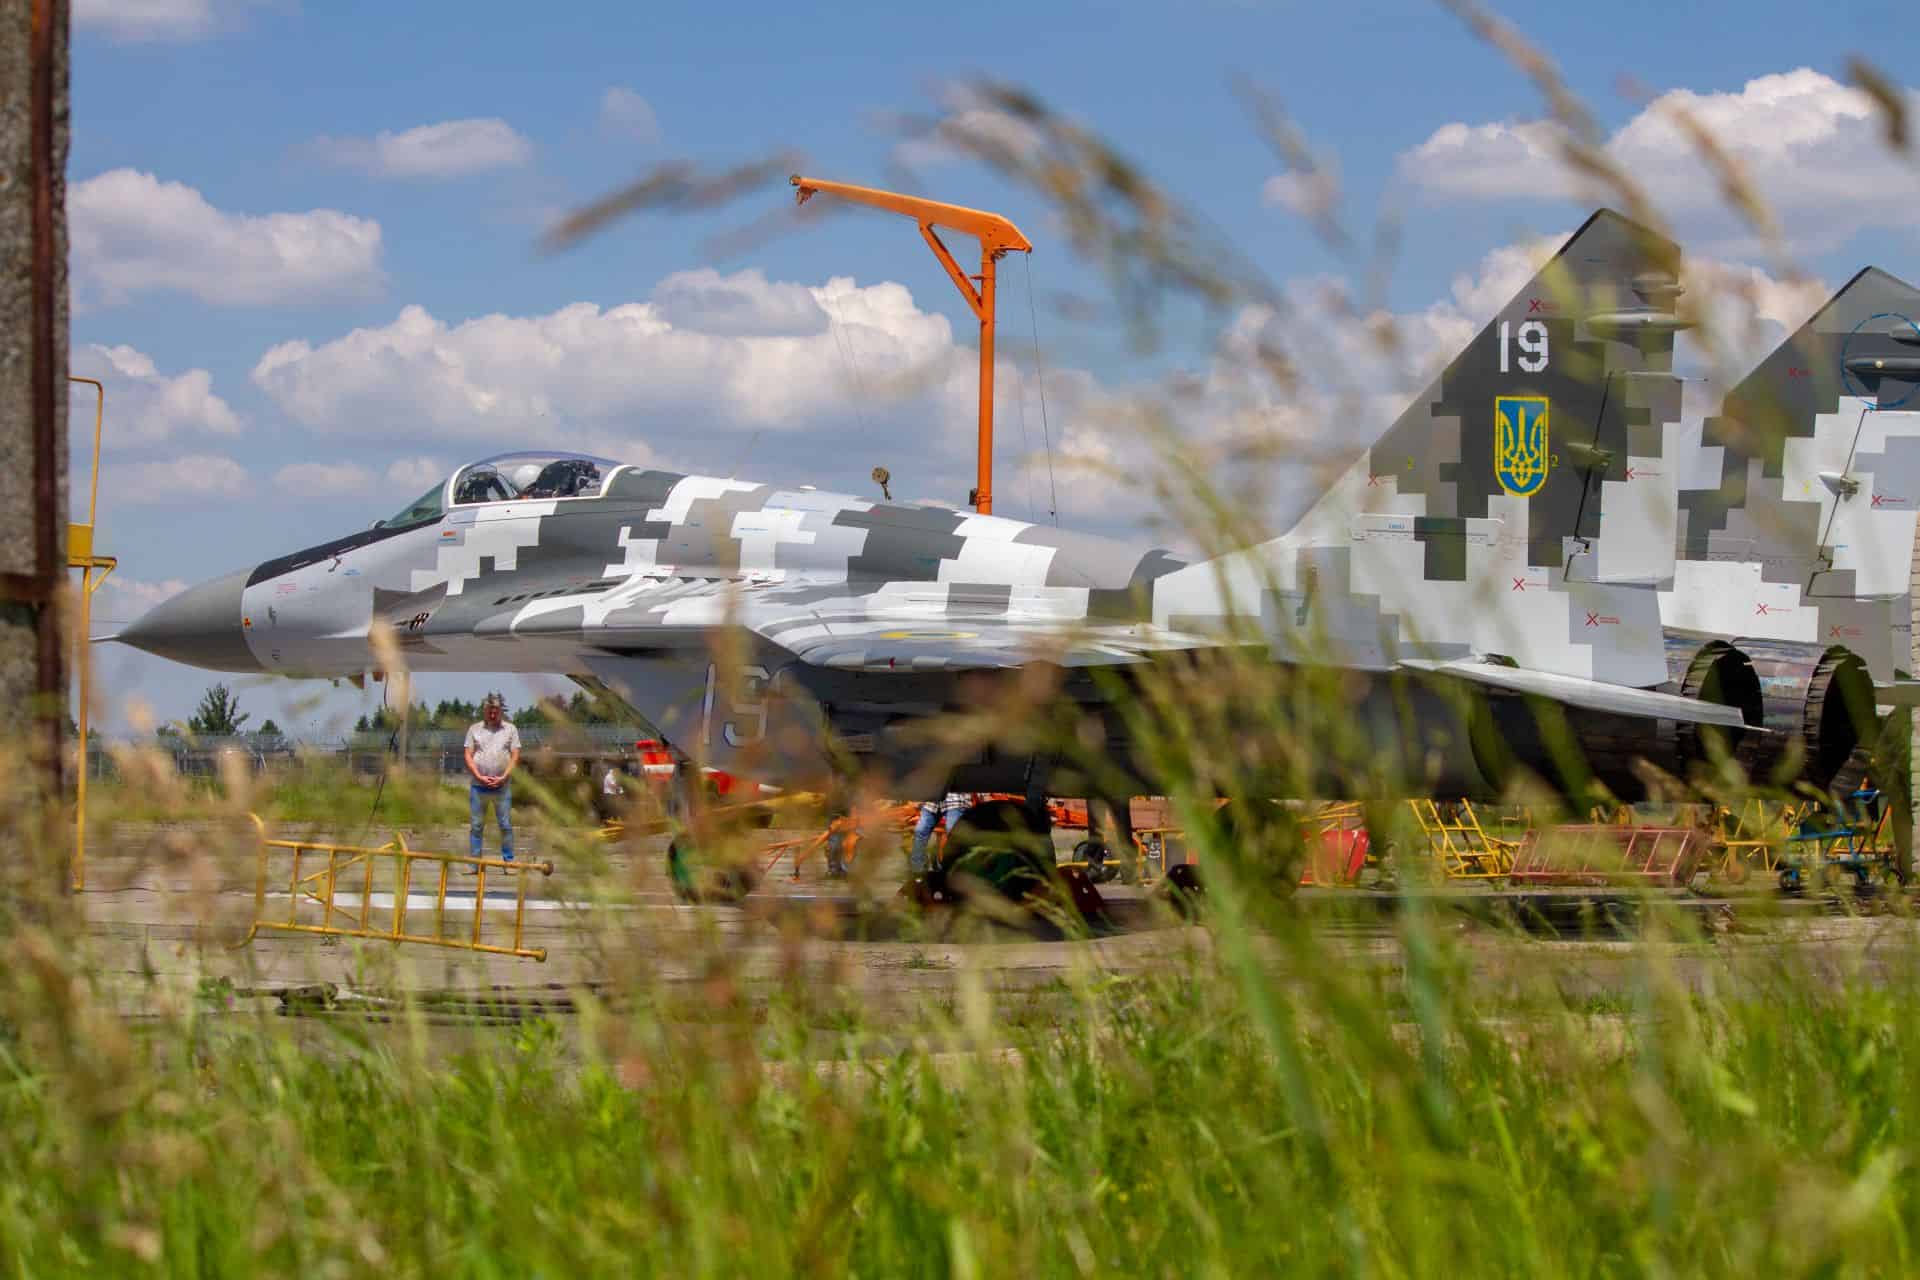 Відремонтований та модернізований винищувач МіГ-29 з бортовим номером 19